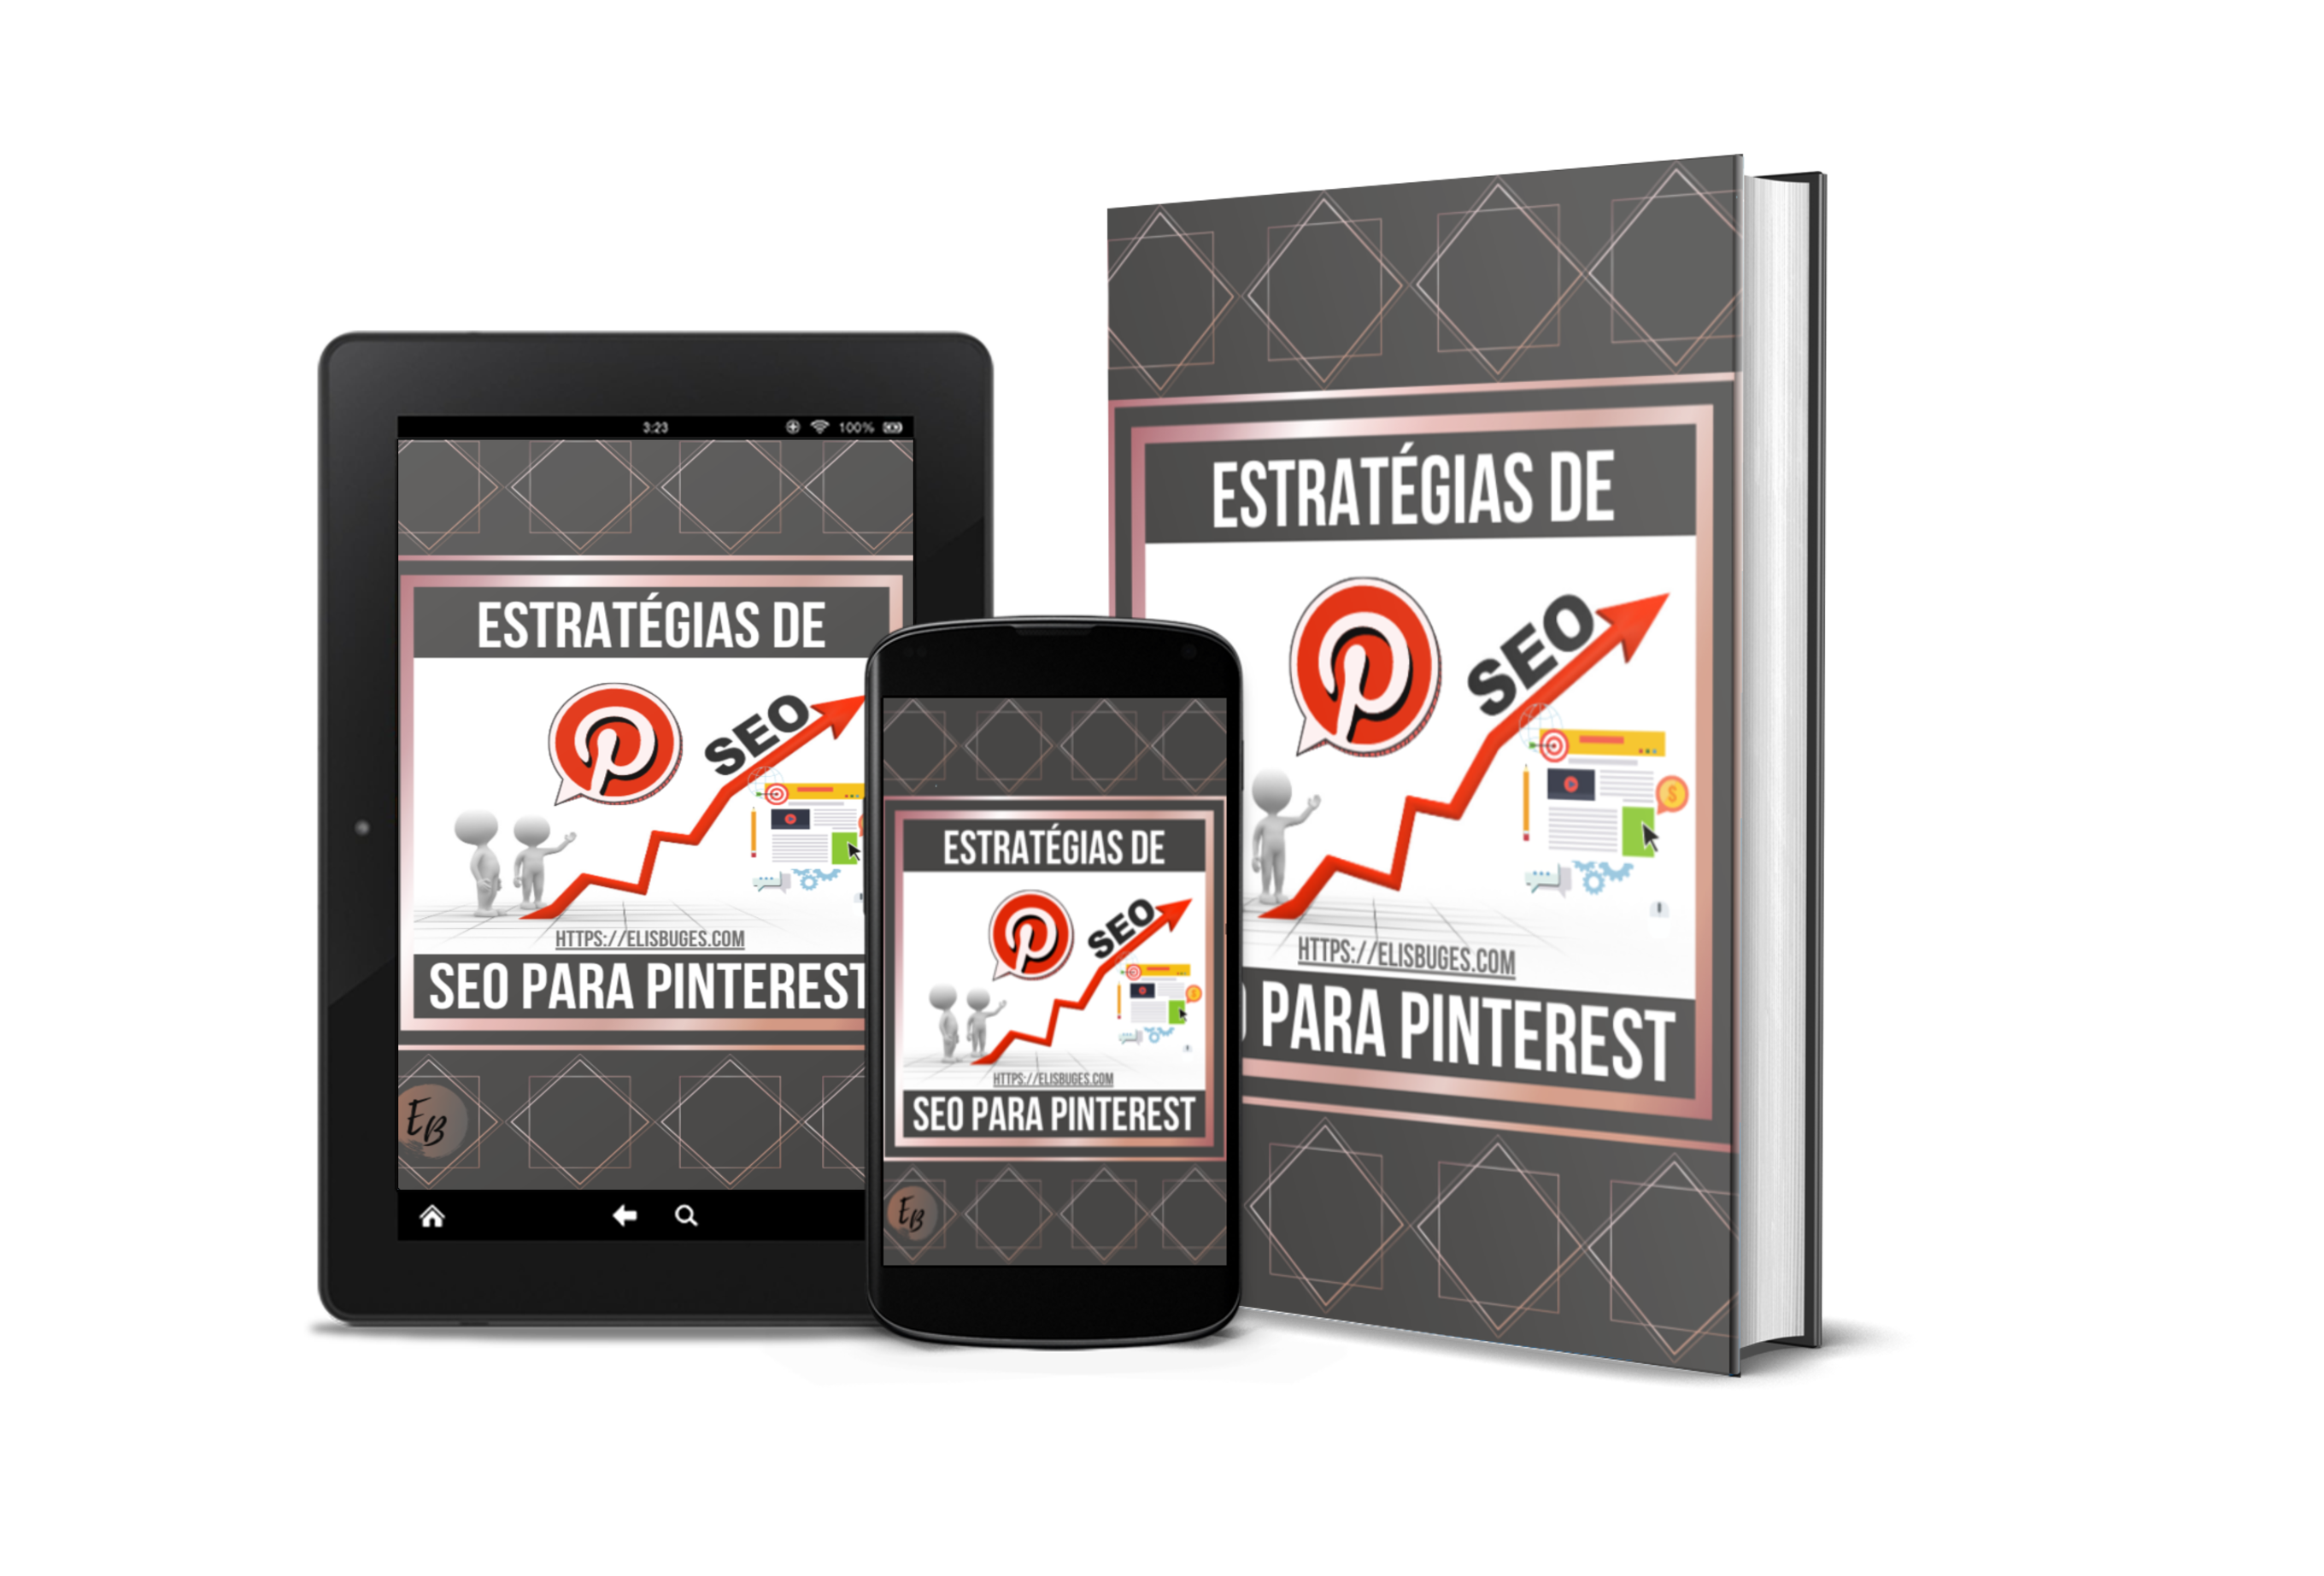 O Segredo das Estratégias de SEO para Pinterest Cover - E-Book - Estratégias de SEO para o Pinterest - Baixe Grátis!